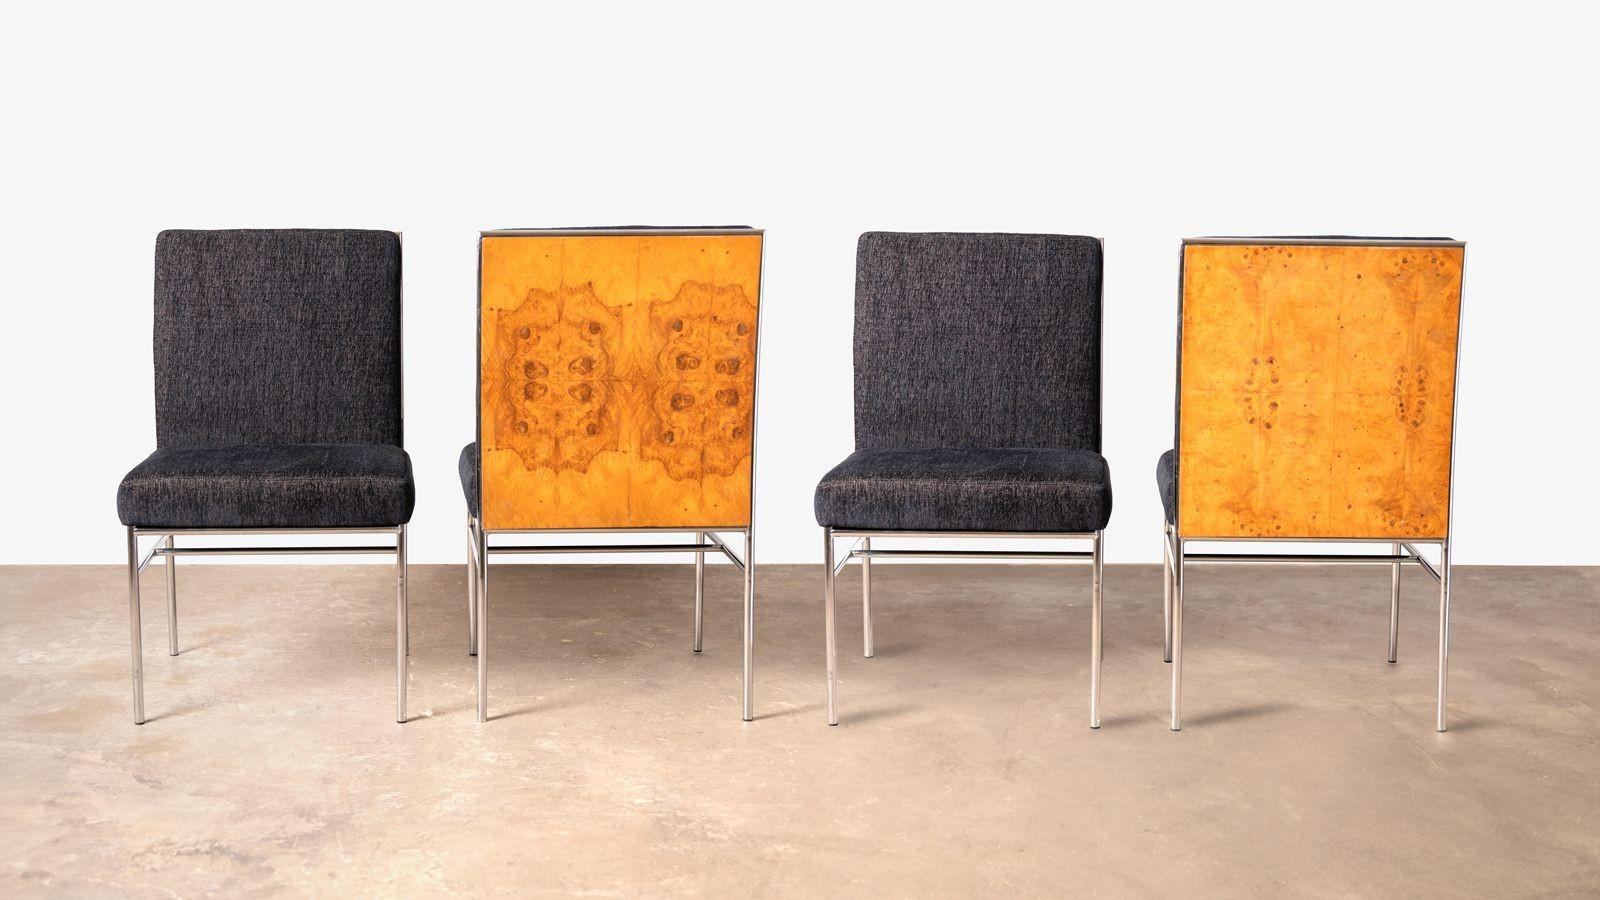 Einzigartiger Satz von vier von Milo Baughman für Thayer Coggin entworfenen Beistellstühlen mit architektonischen Chromrahmen und Rückenlehnen aus olivgrünem Burlwood. Frisch aufgeschäumt und neu gepolstert. Wäre perfekt für einen großen Spieltisch.